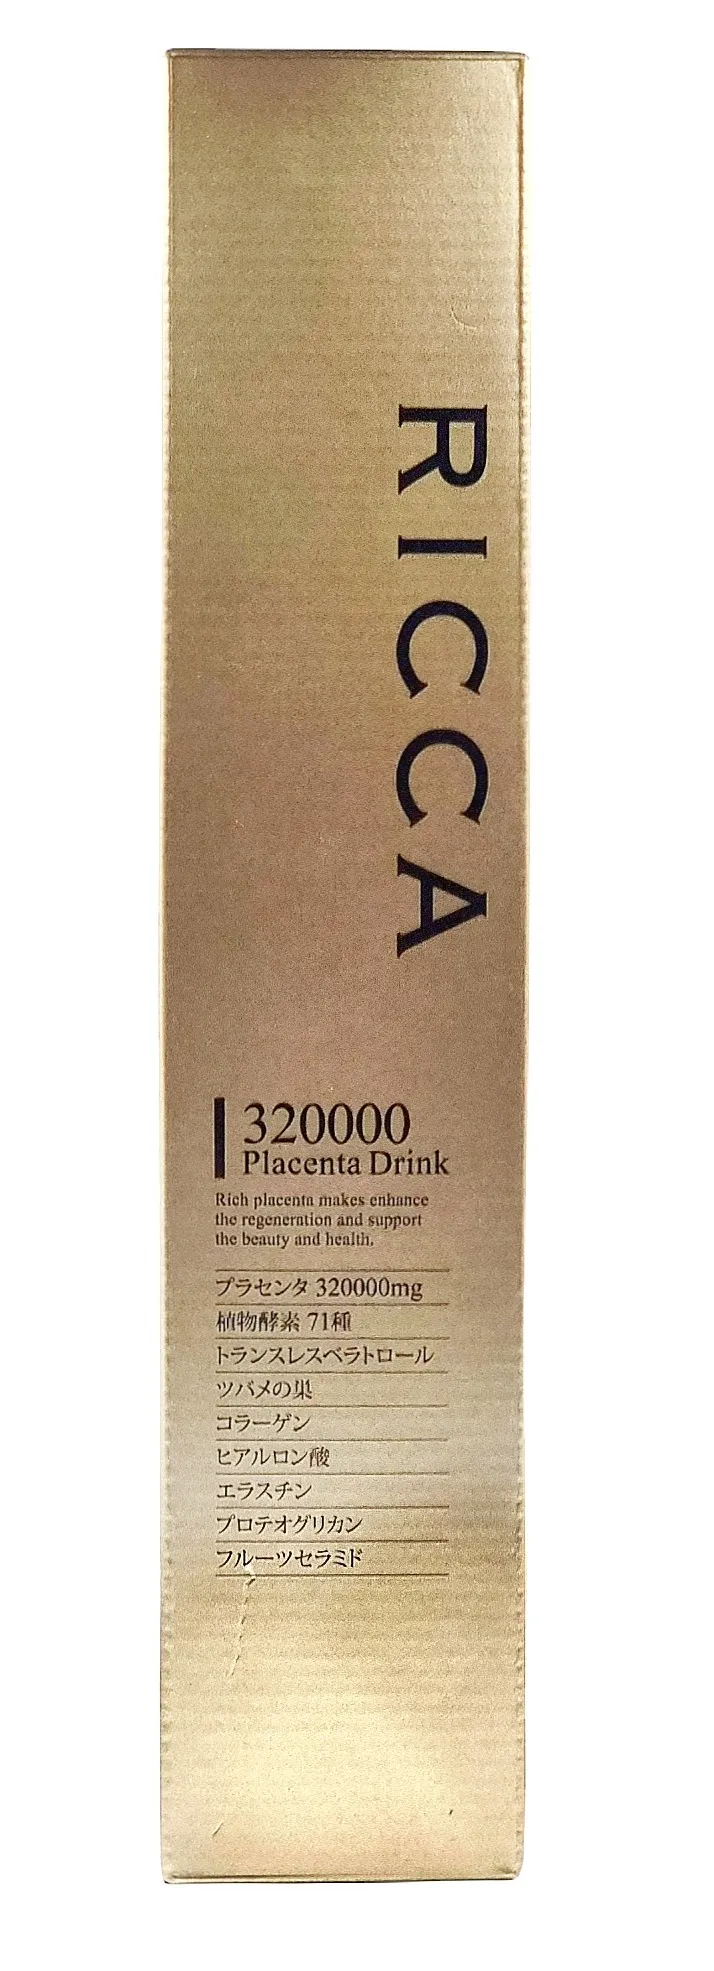 Плацентарный напиток Ricca с высоким содержанием плаценты 320000 мг и экстракта ласточкина гнезда, коллагеном для омоложения организма